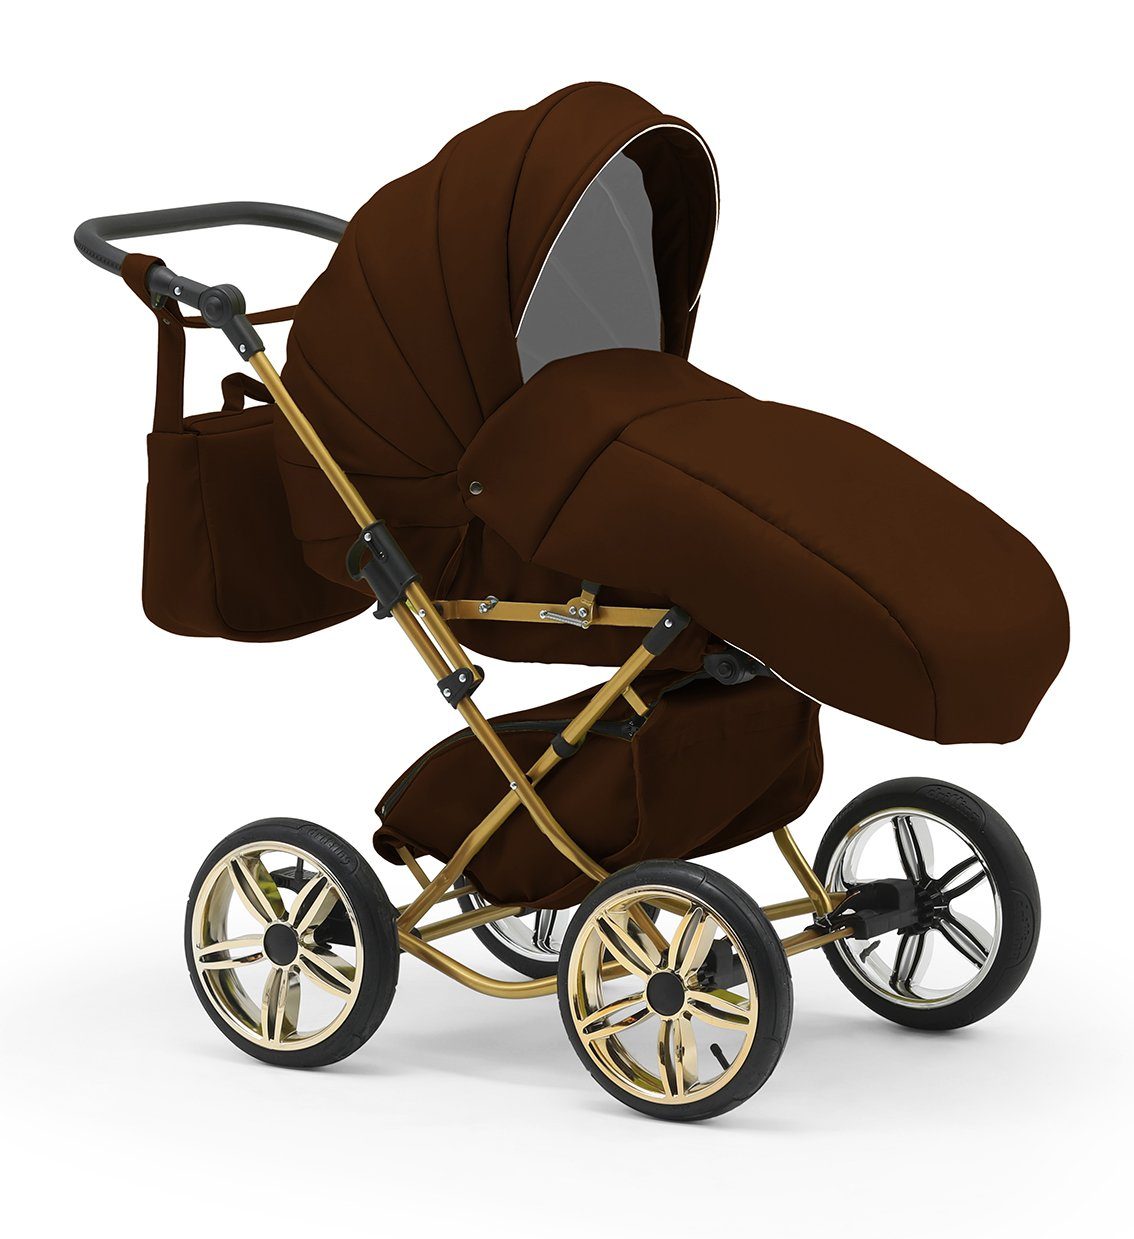 10 in 4 - Sorento Braun Kombi-Kinderwagen Autositz babies-on-wheels inkl. 1 14 Iso Designs Base Teile - in und